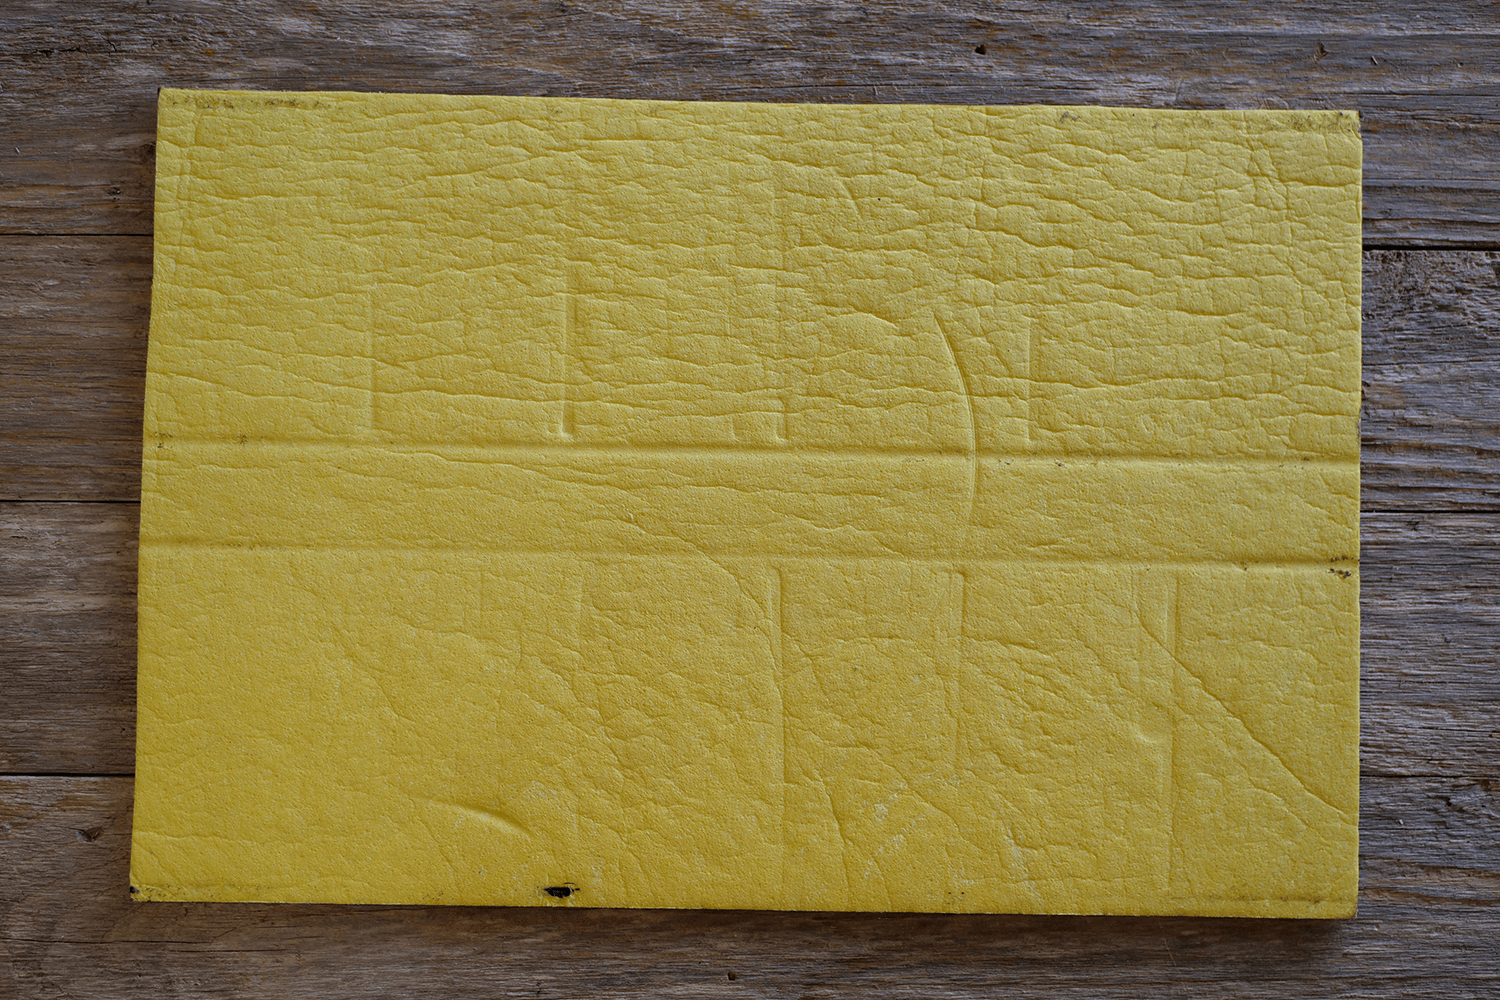 sta-wet palette sponge